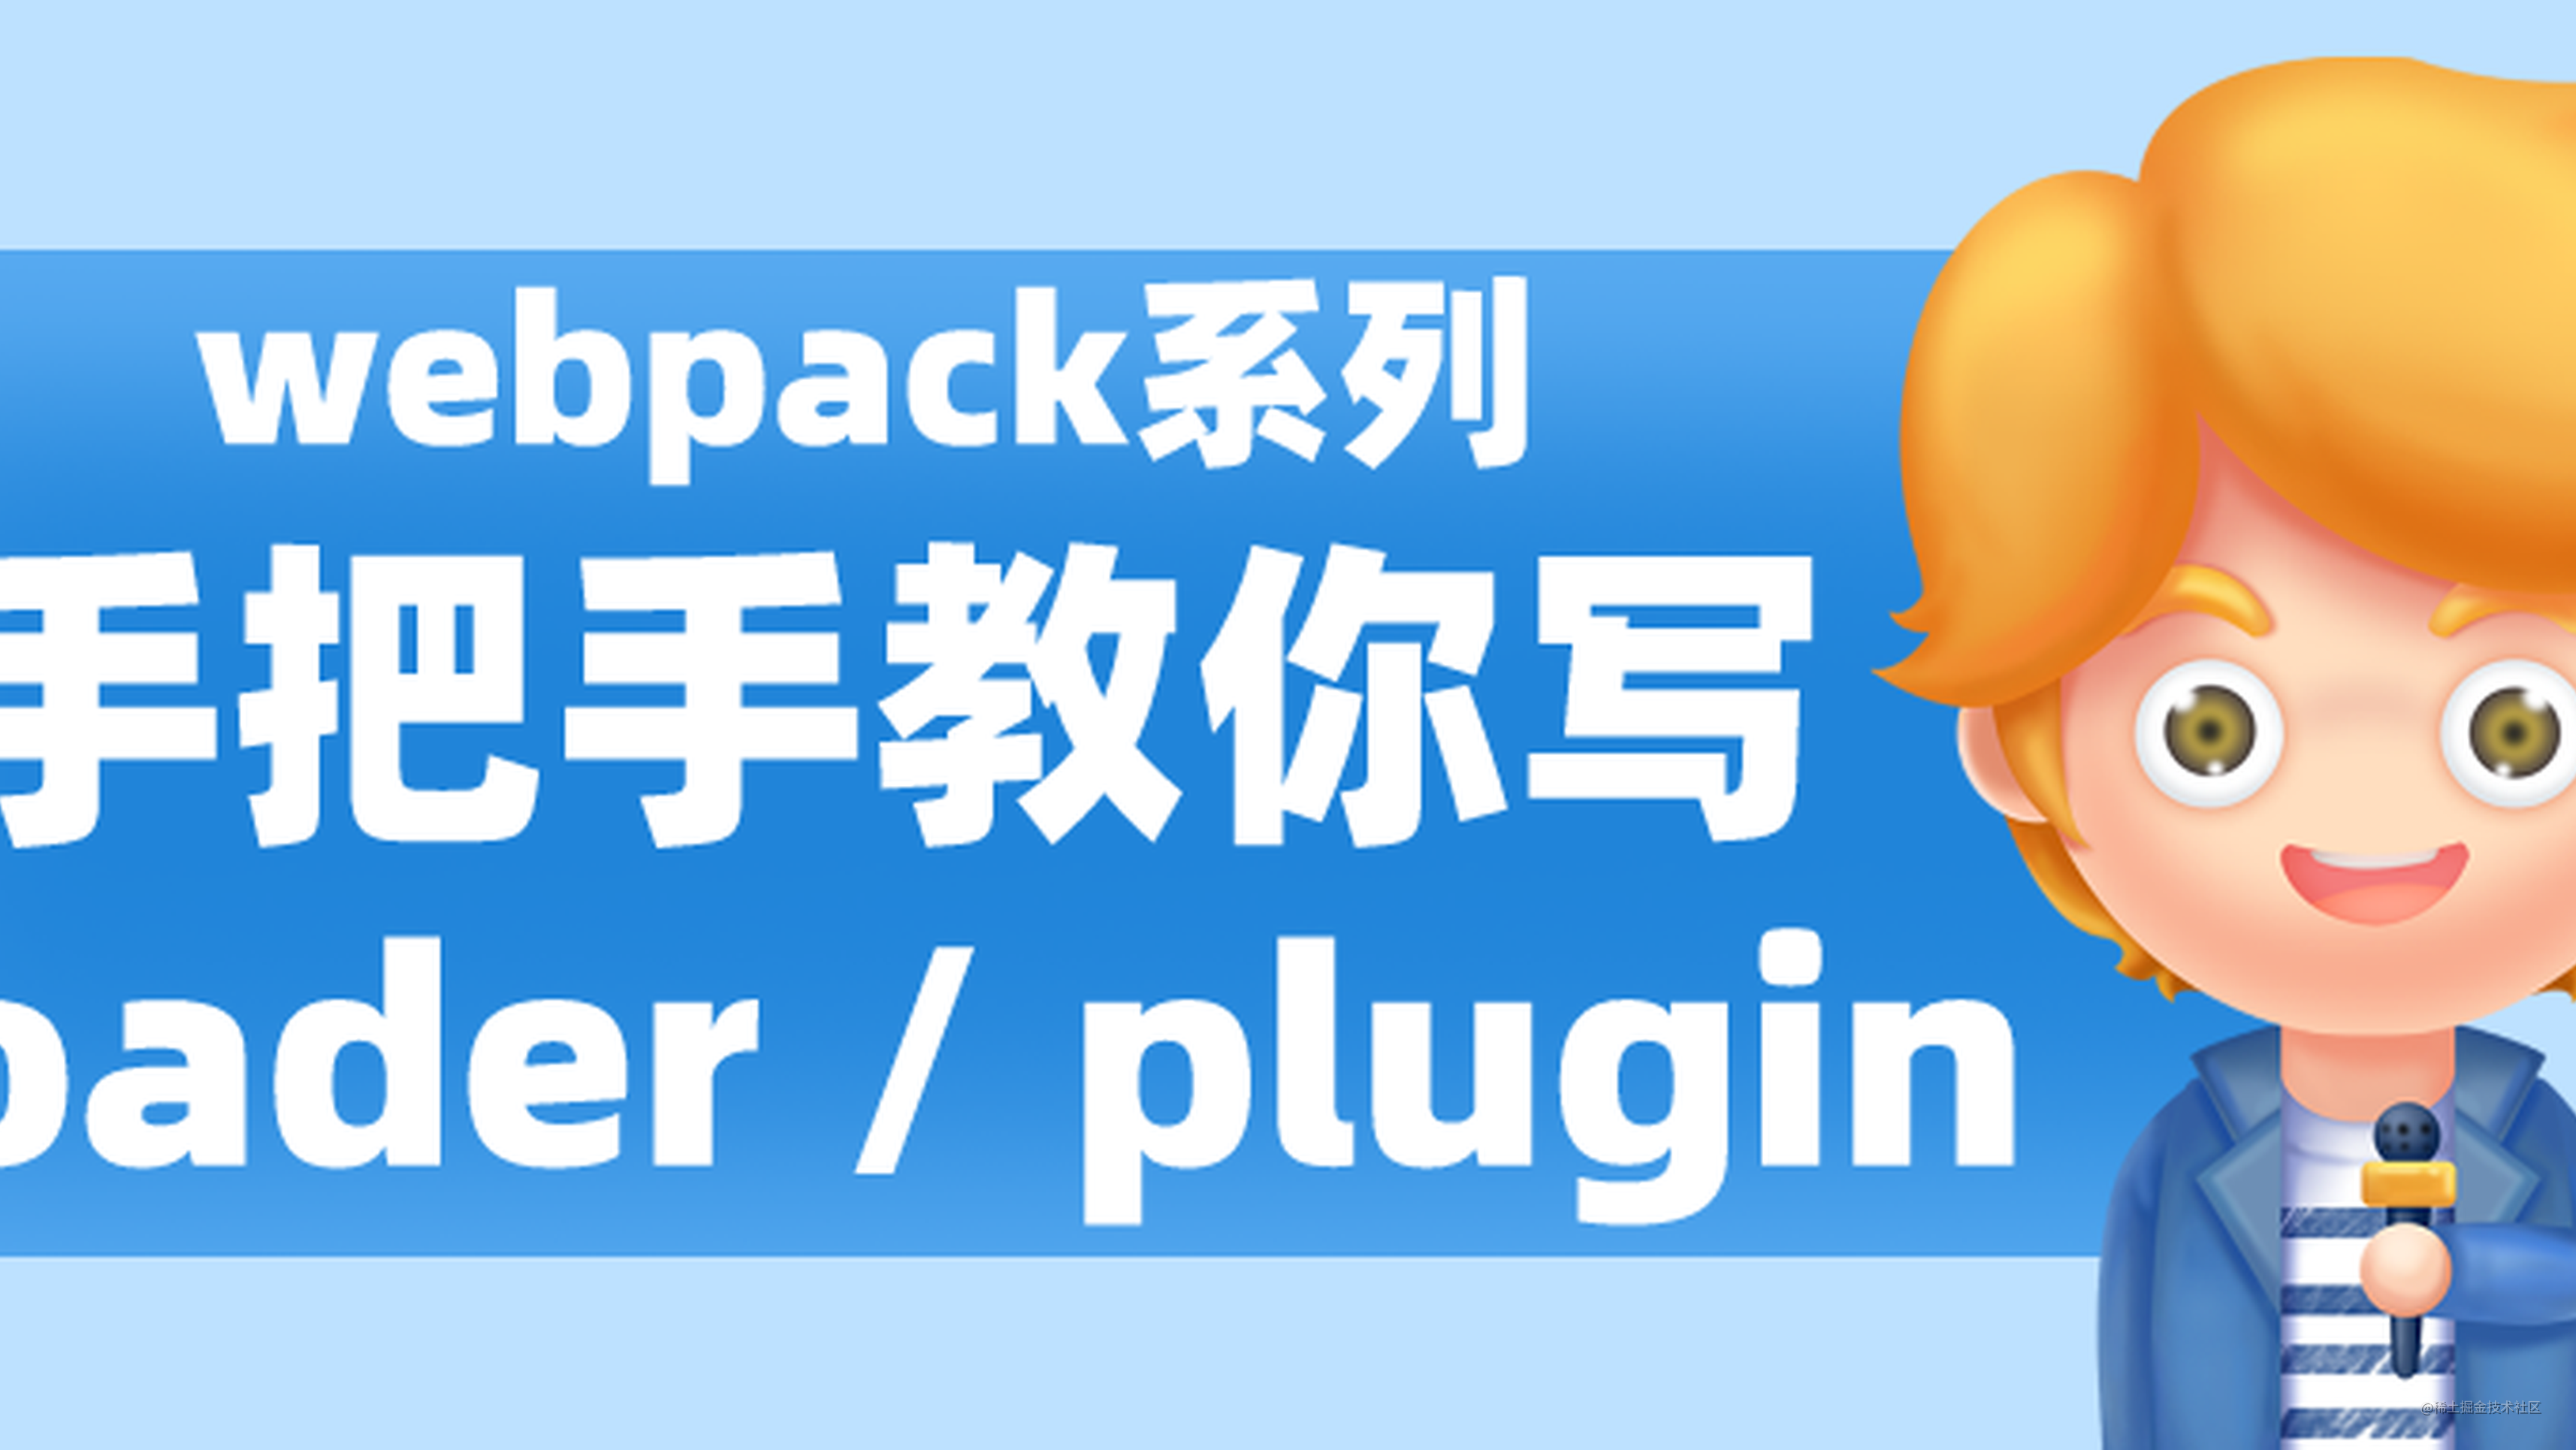 Webpack - 手把手教你写一个 loader / plugin